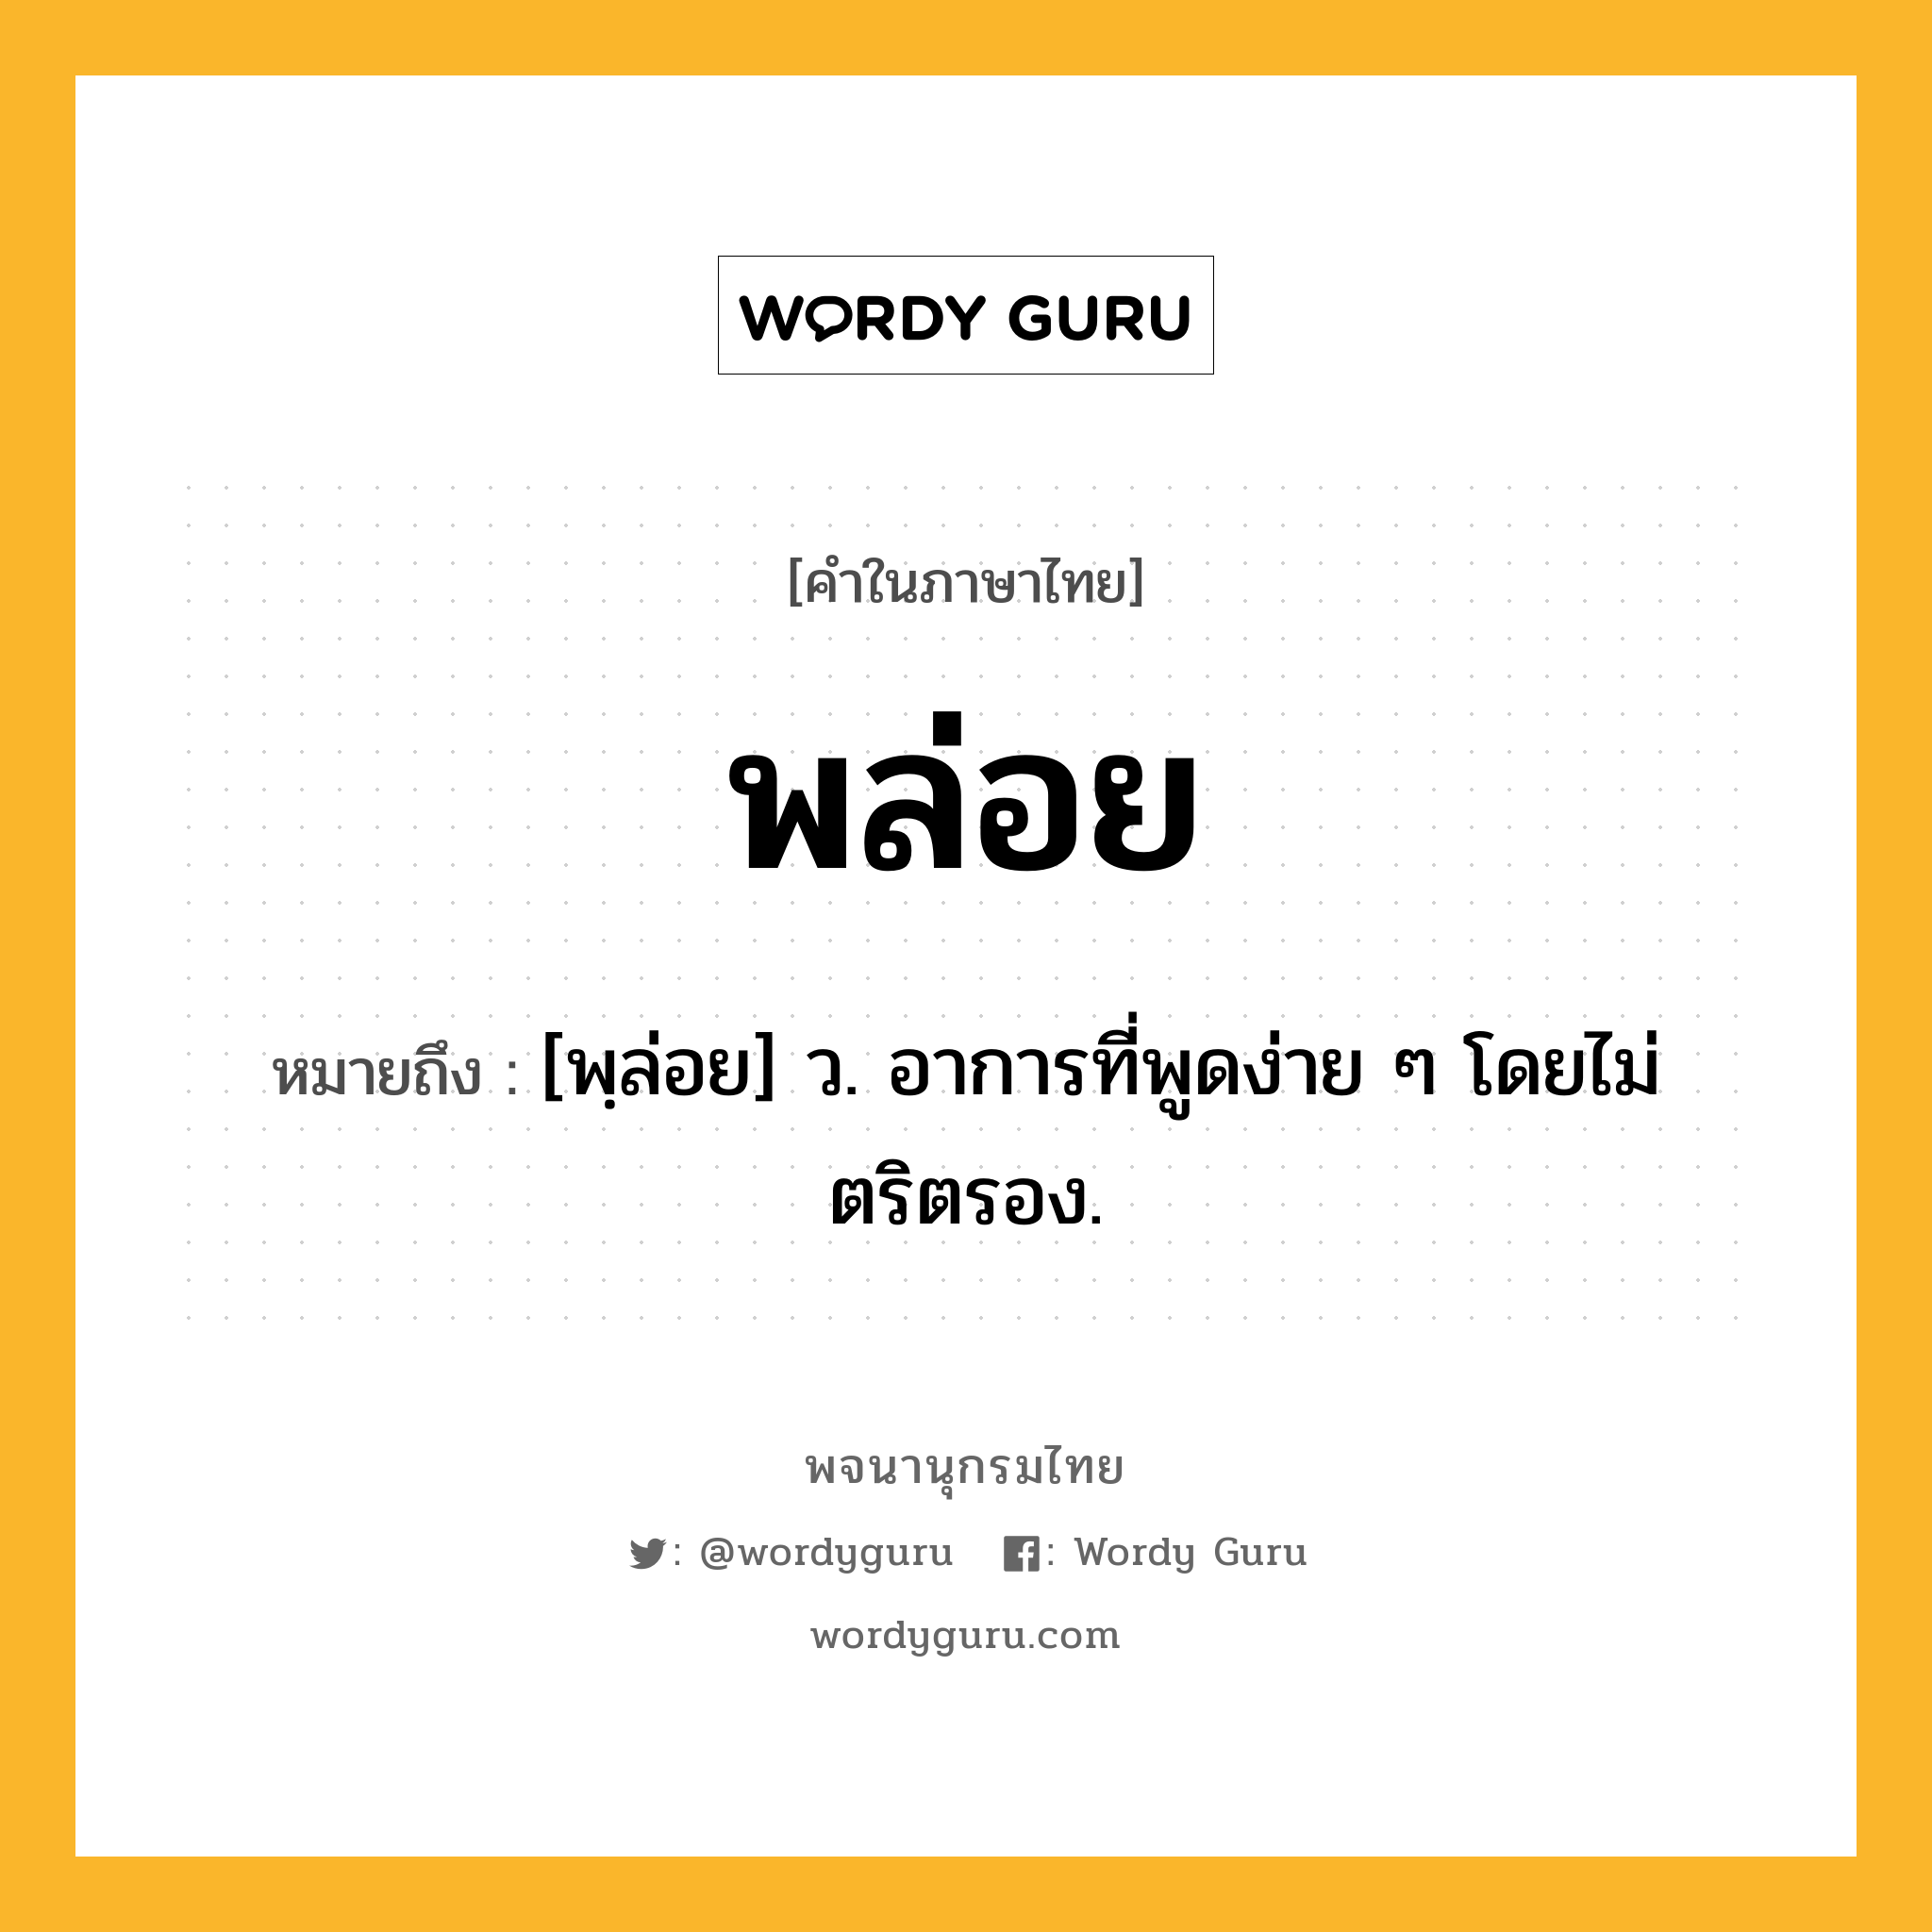 พล่อย ความหมาย หมายถึงอะไร?, คำในภาษาไทย พล่อย หมายถึง [พฺล่อย] ว. อาการที่พูดง่าย ๆ โดยไม่ตริตรอง.